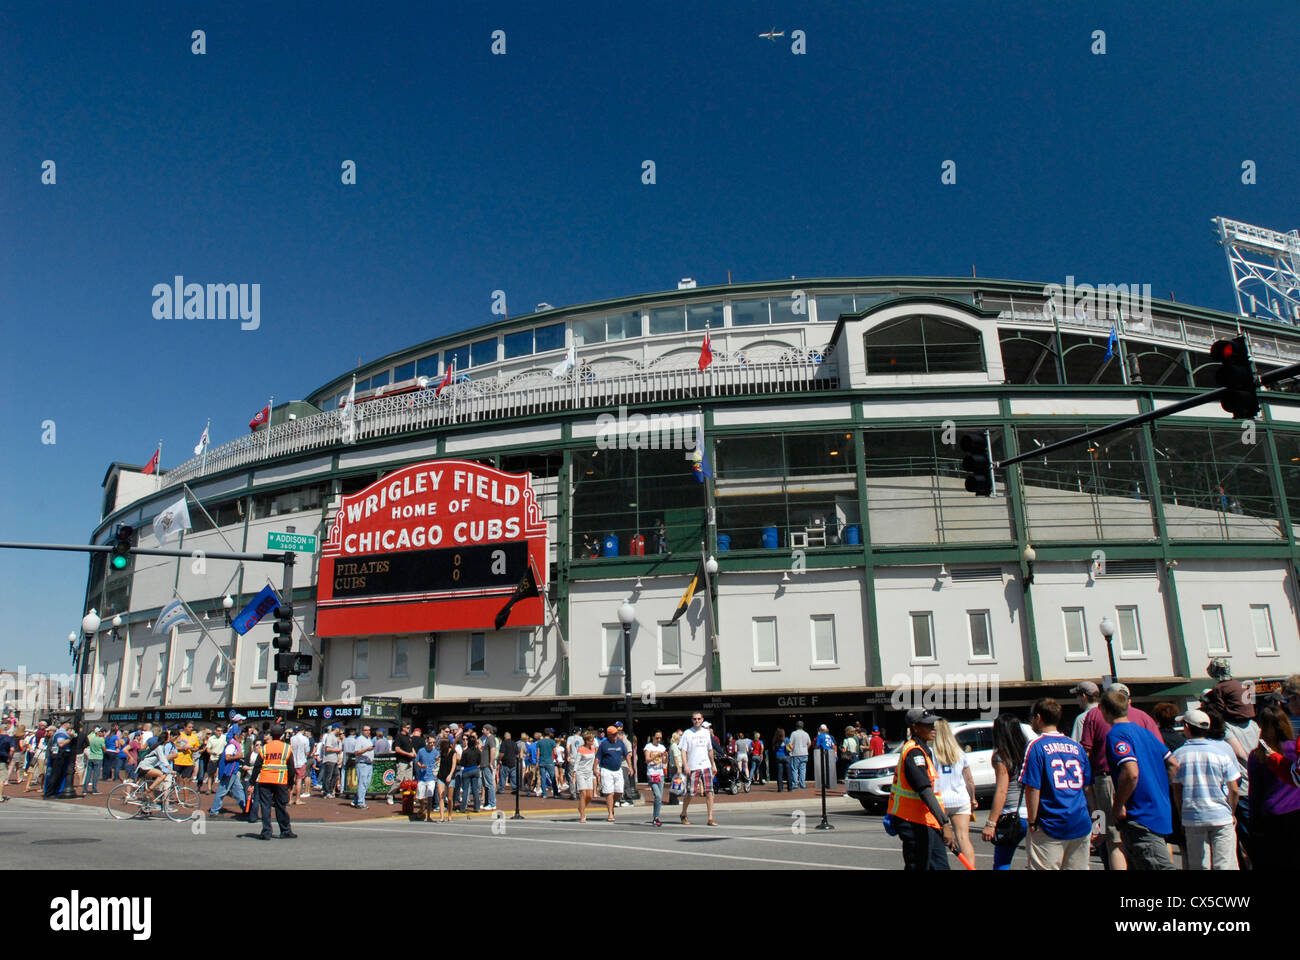 Wrigley Field, el estadio de béisbol en Chicago, Illinois. Hogar del equipo de béisbol Chicago Cubs. Foto de stock